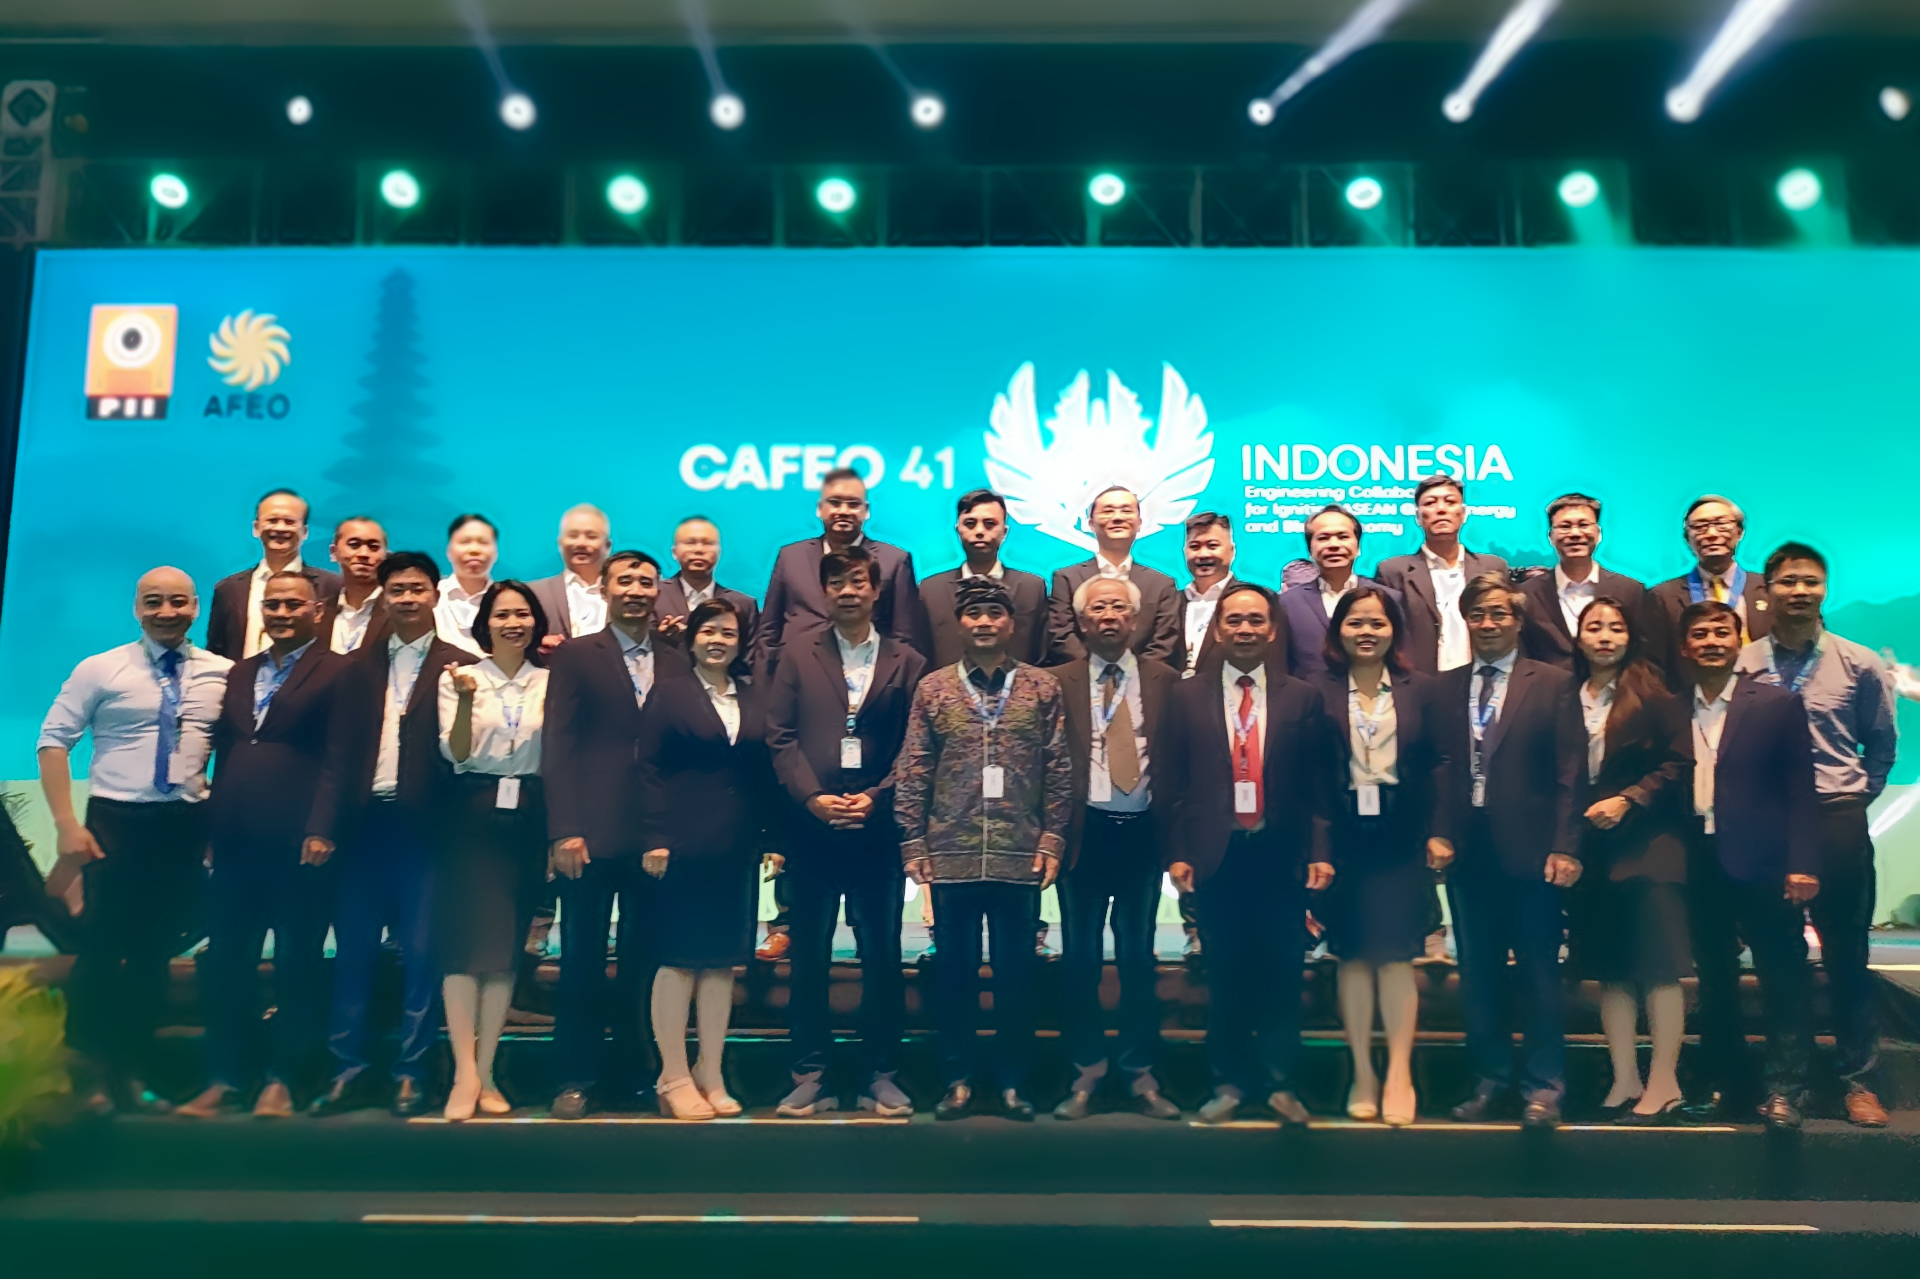 Đại diện Liên hiệp các Hội Khoa học và Kỹ thuật Việt Nam (VUSTA), Hội Điện lực TPHCM chúc mừng các kỹ sư ASEAN tại Hội nghị CAFEO-41 Indonesia năm 2023